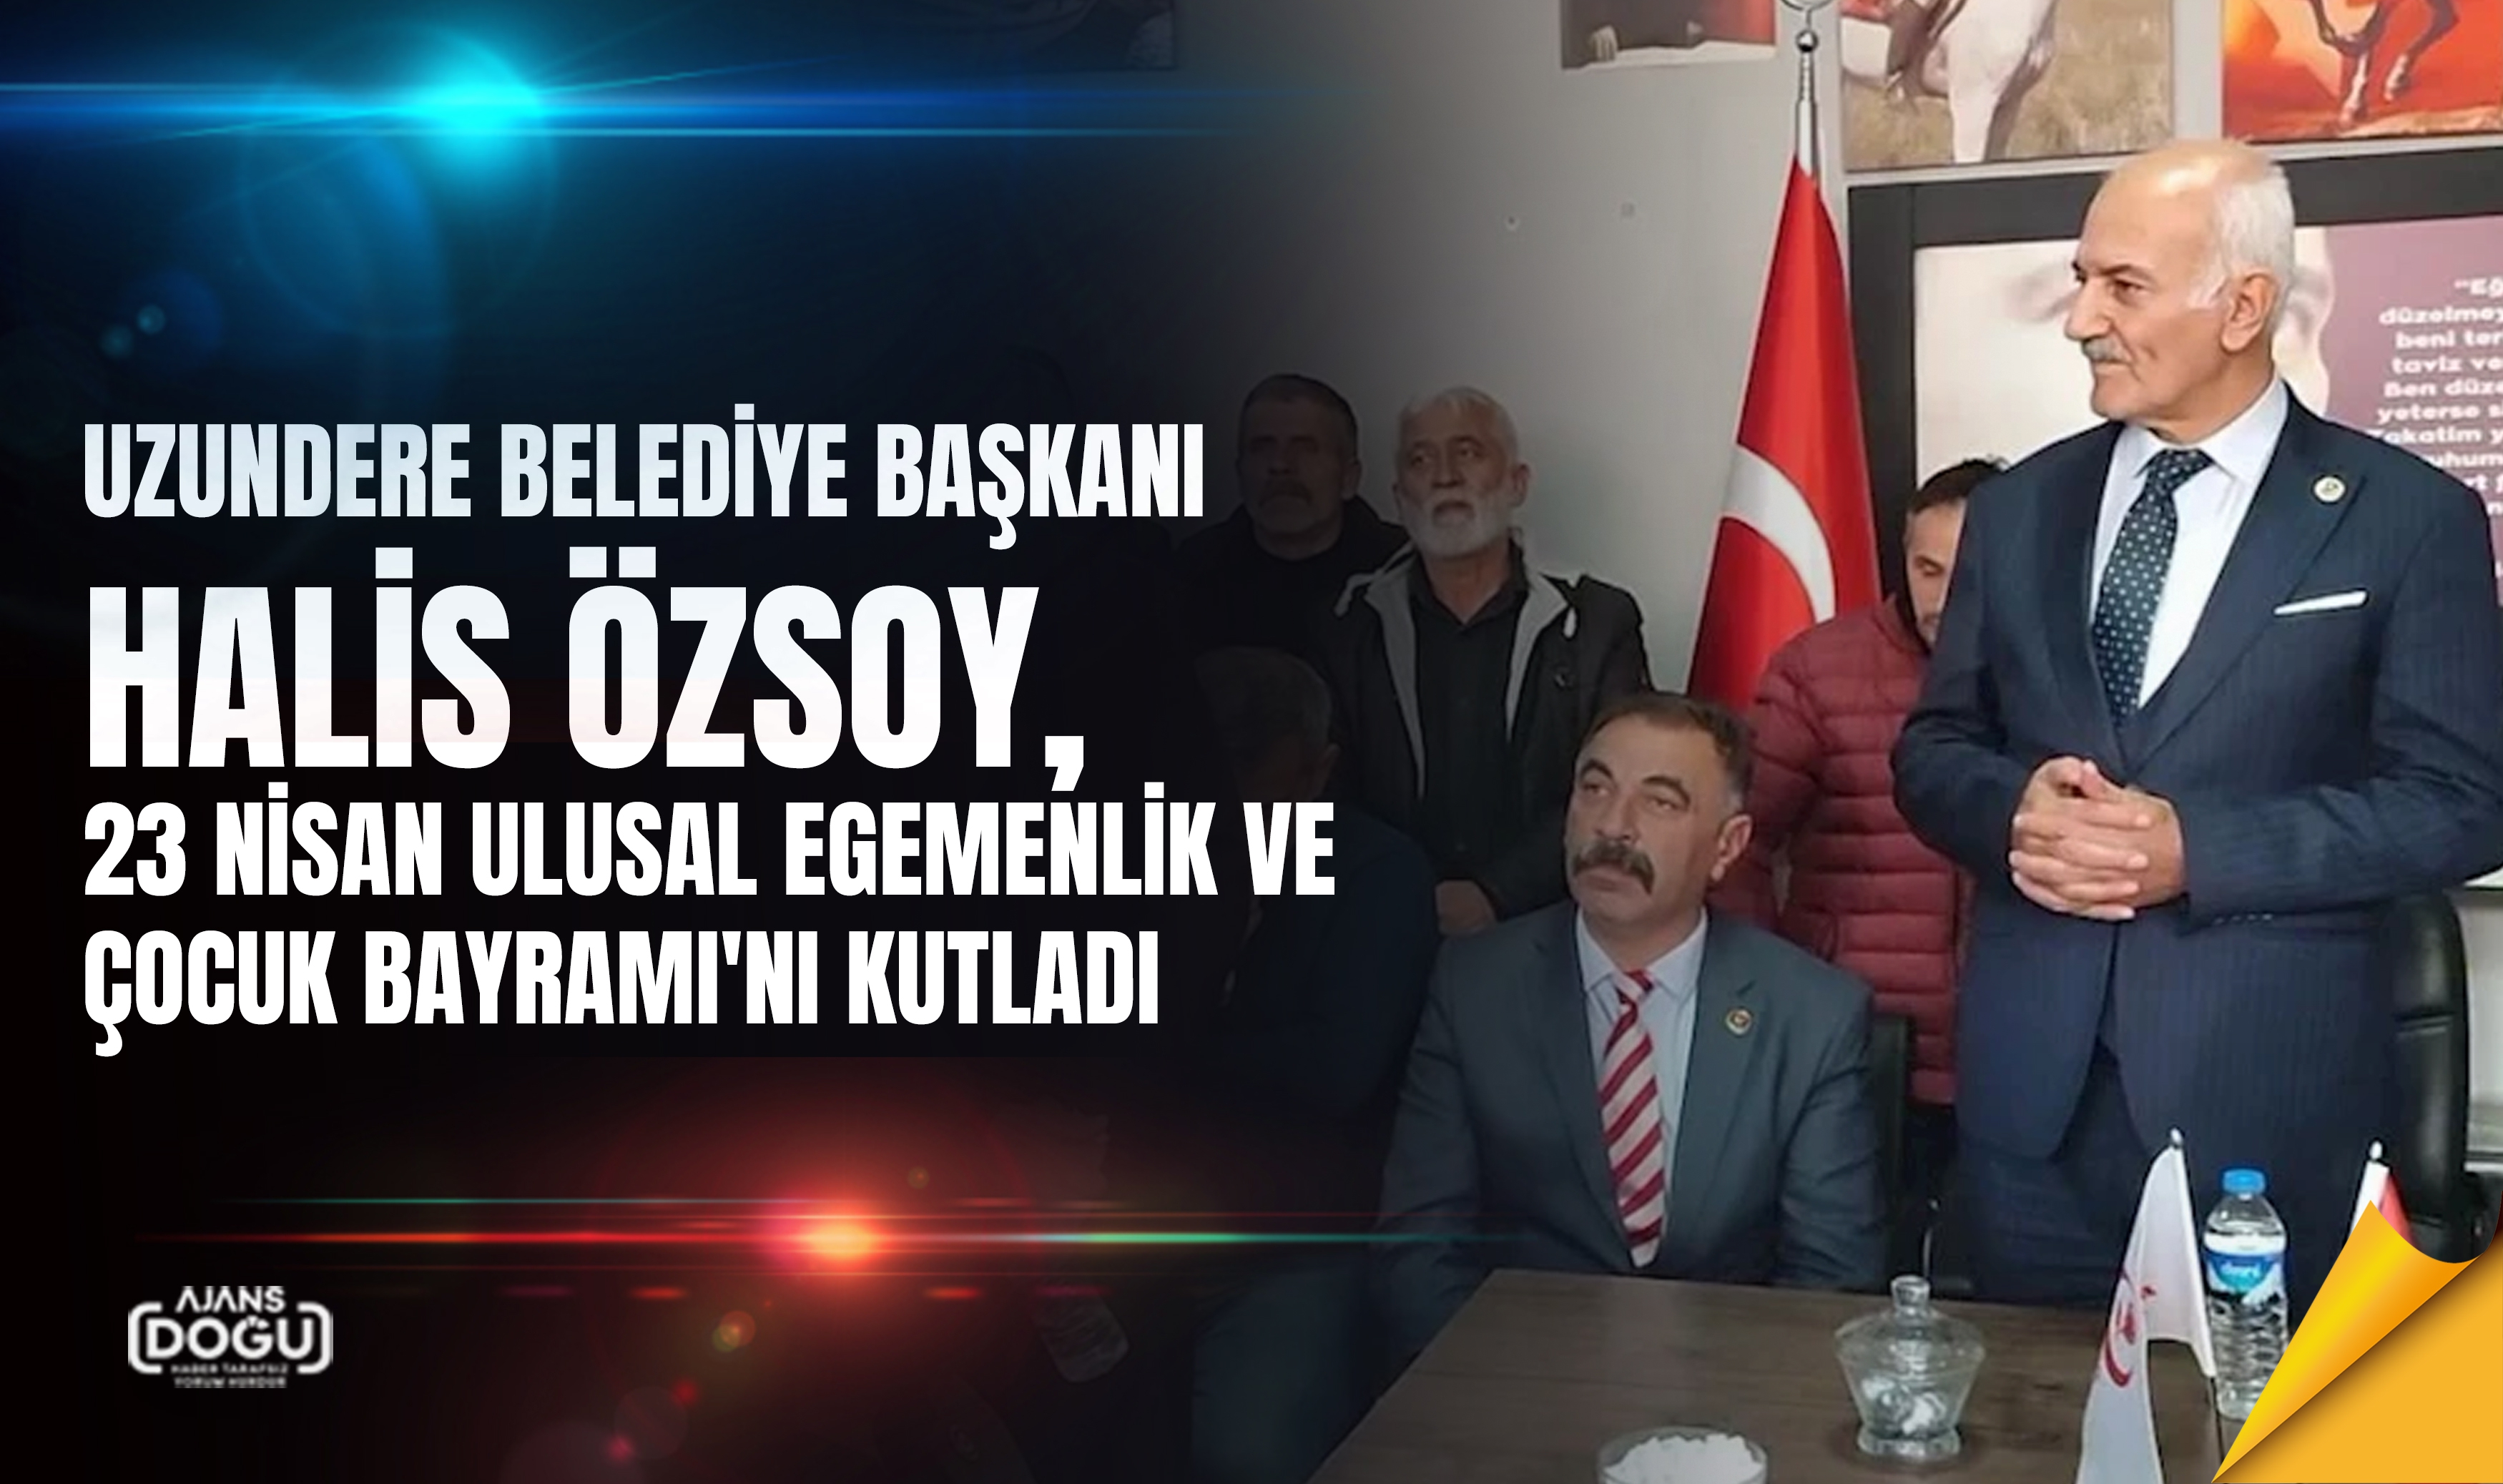 Uzundere Belediye Başkanı Halis Özsoy, 23 Nisan Ulusal Egemenlik ve Çocuk Bayramı'nı Kutladı